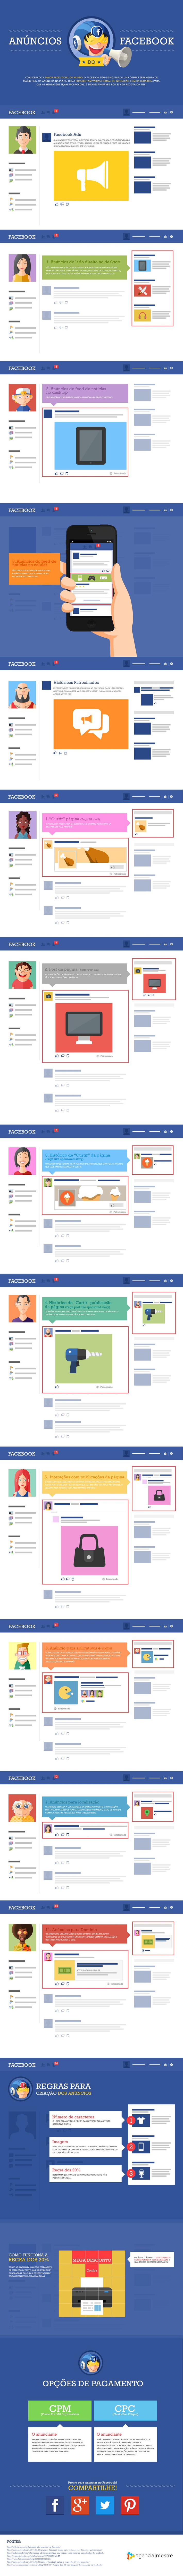 Advertising-Infographics-Infografico-Anuncios-do-Facebook Advertising Infographics : Infográfico - Anúncios do Facebook